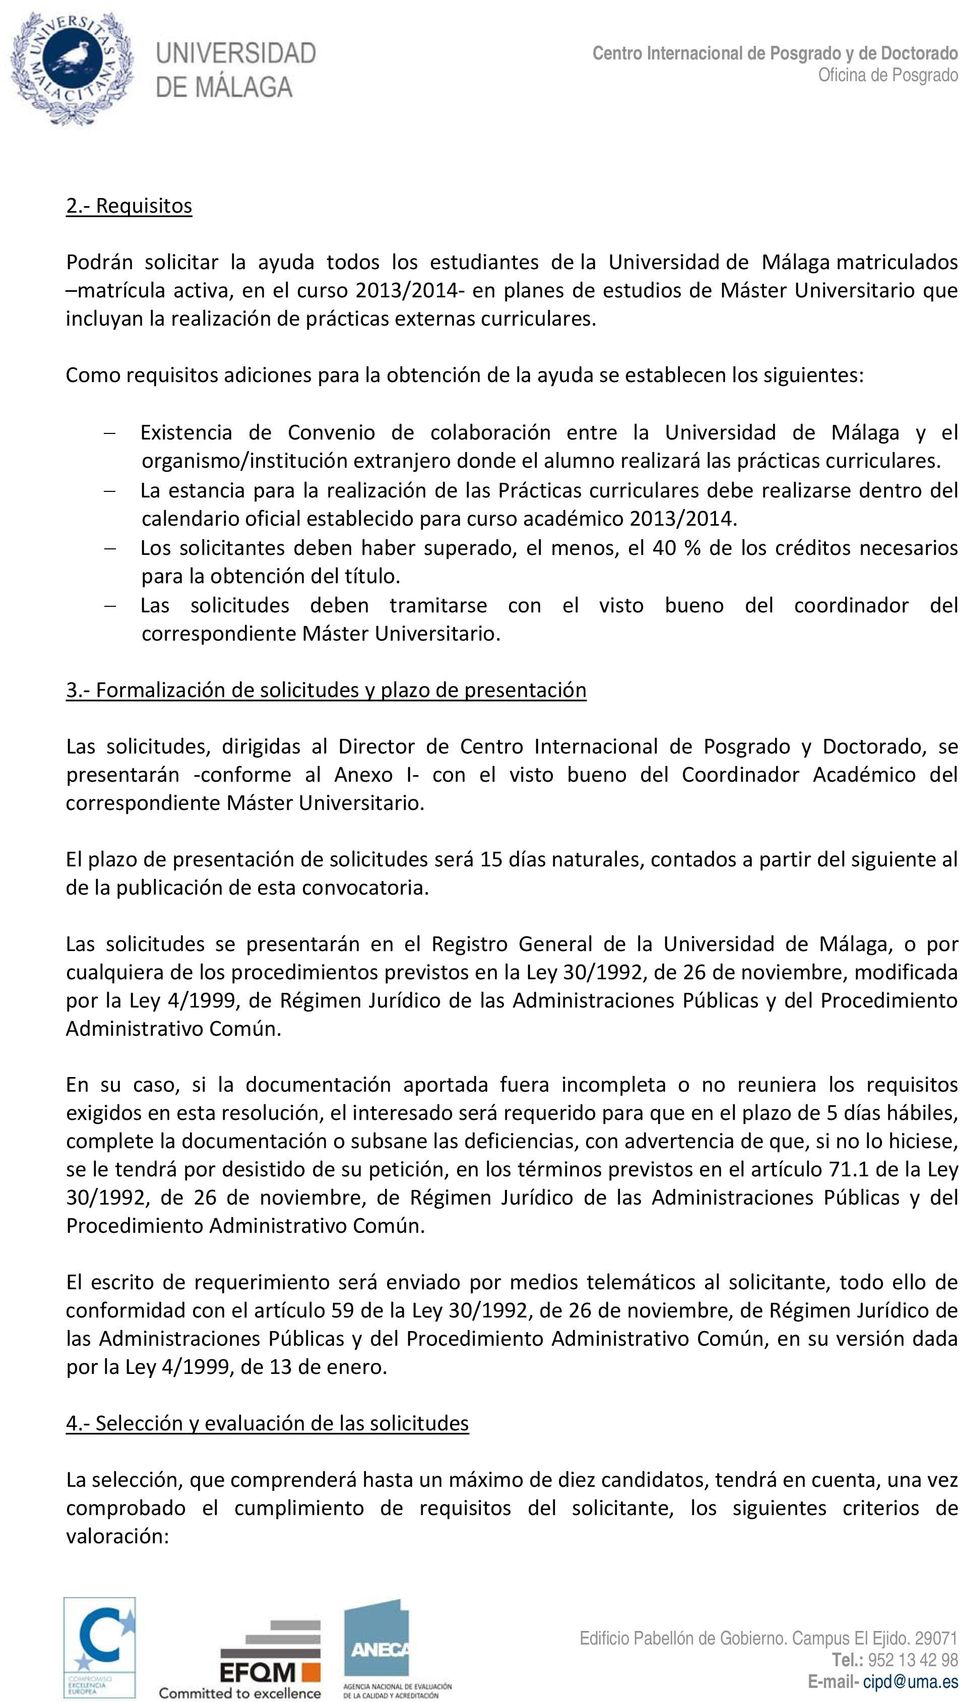 Como requisitos adiciones para la obtención de la ayuda se establecen los siguientes: Existencia de Convenio de colaboración entre la Universidad de Málaga y el organismo/institución extranjero donde